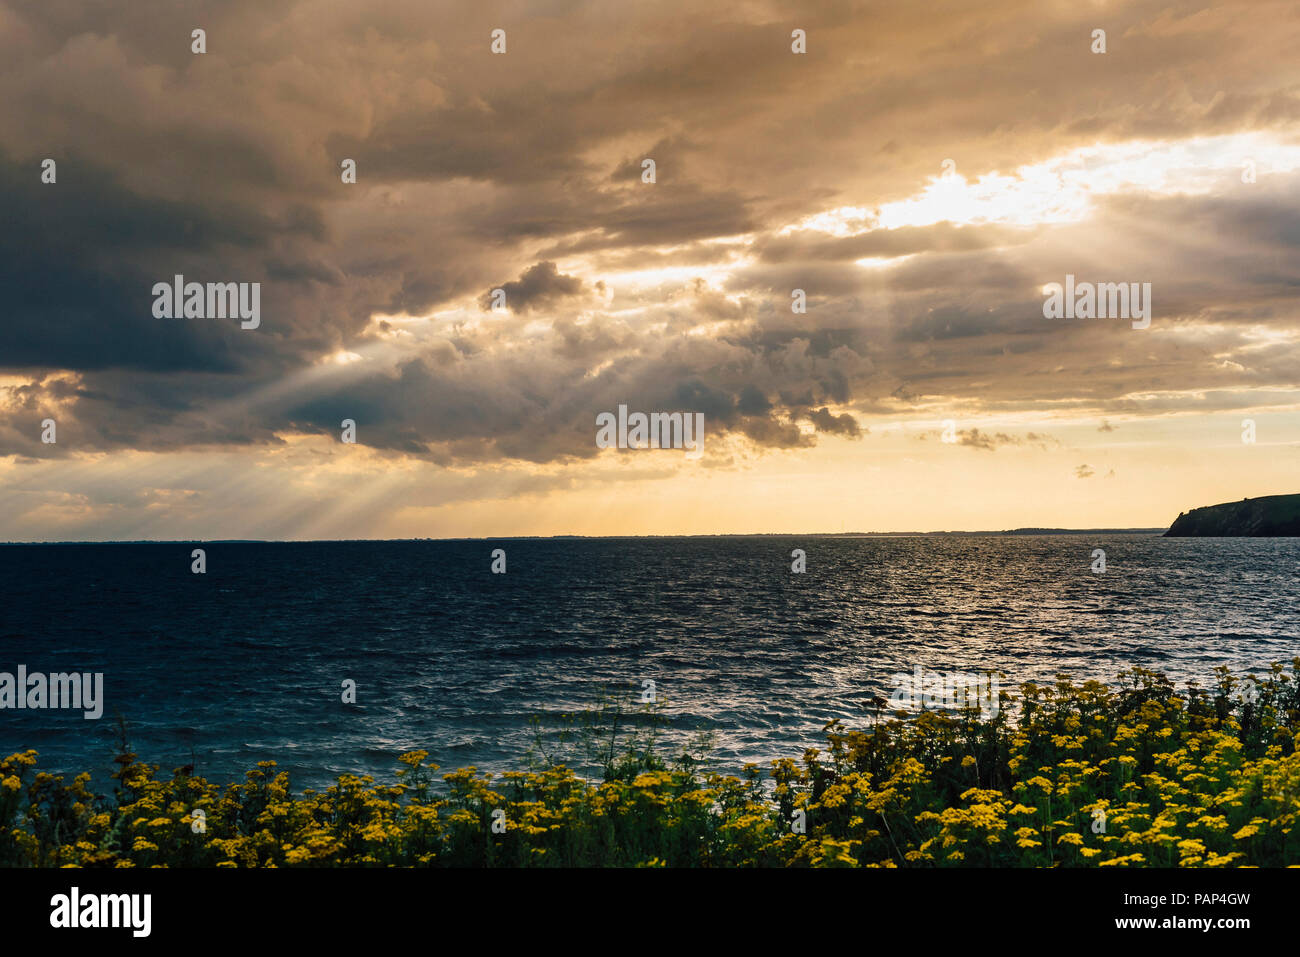 Allemagne, Ruegen, côte et mer Baltique sous ciel nuageux Banque D'Images